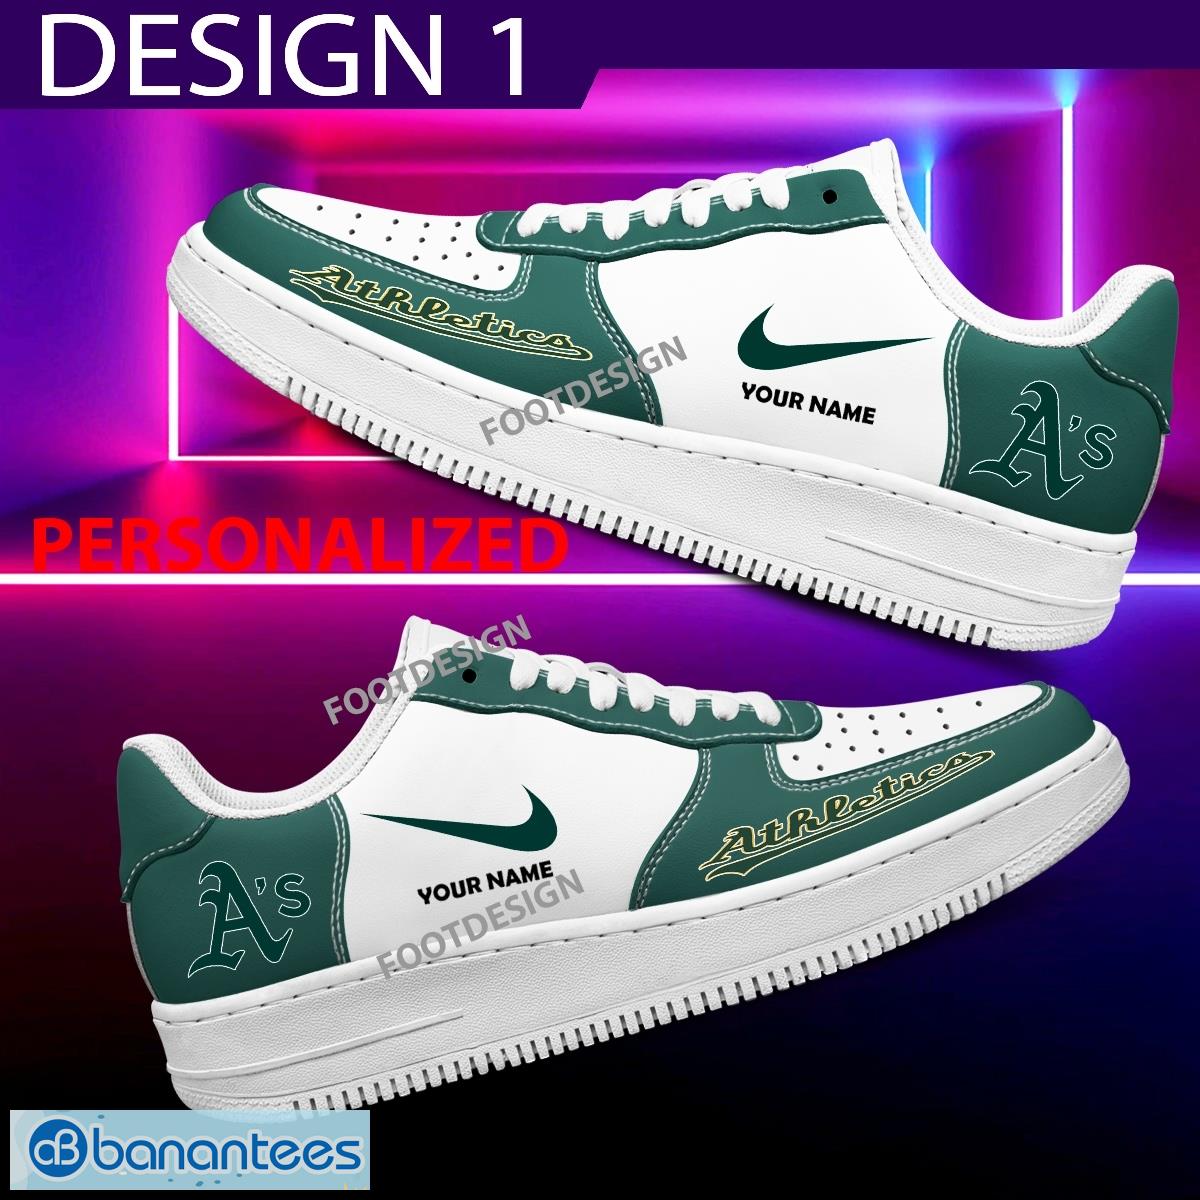 Custom Name Oakland Athletics Teams Air Force 1 Shoes Design Gift AF1 Sneaker For Fans - Oakland Athletics Air Force 1 Sneaker Personalized Style 1